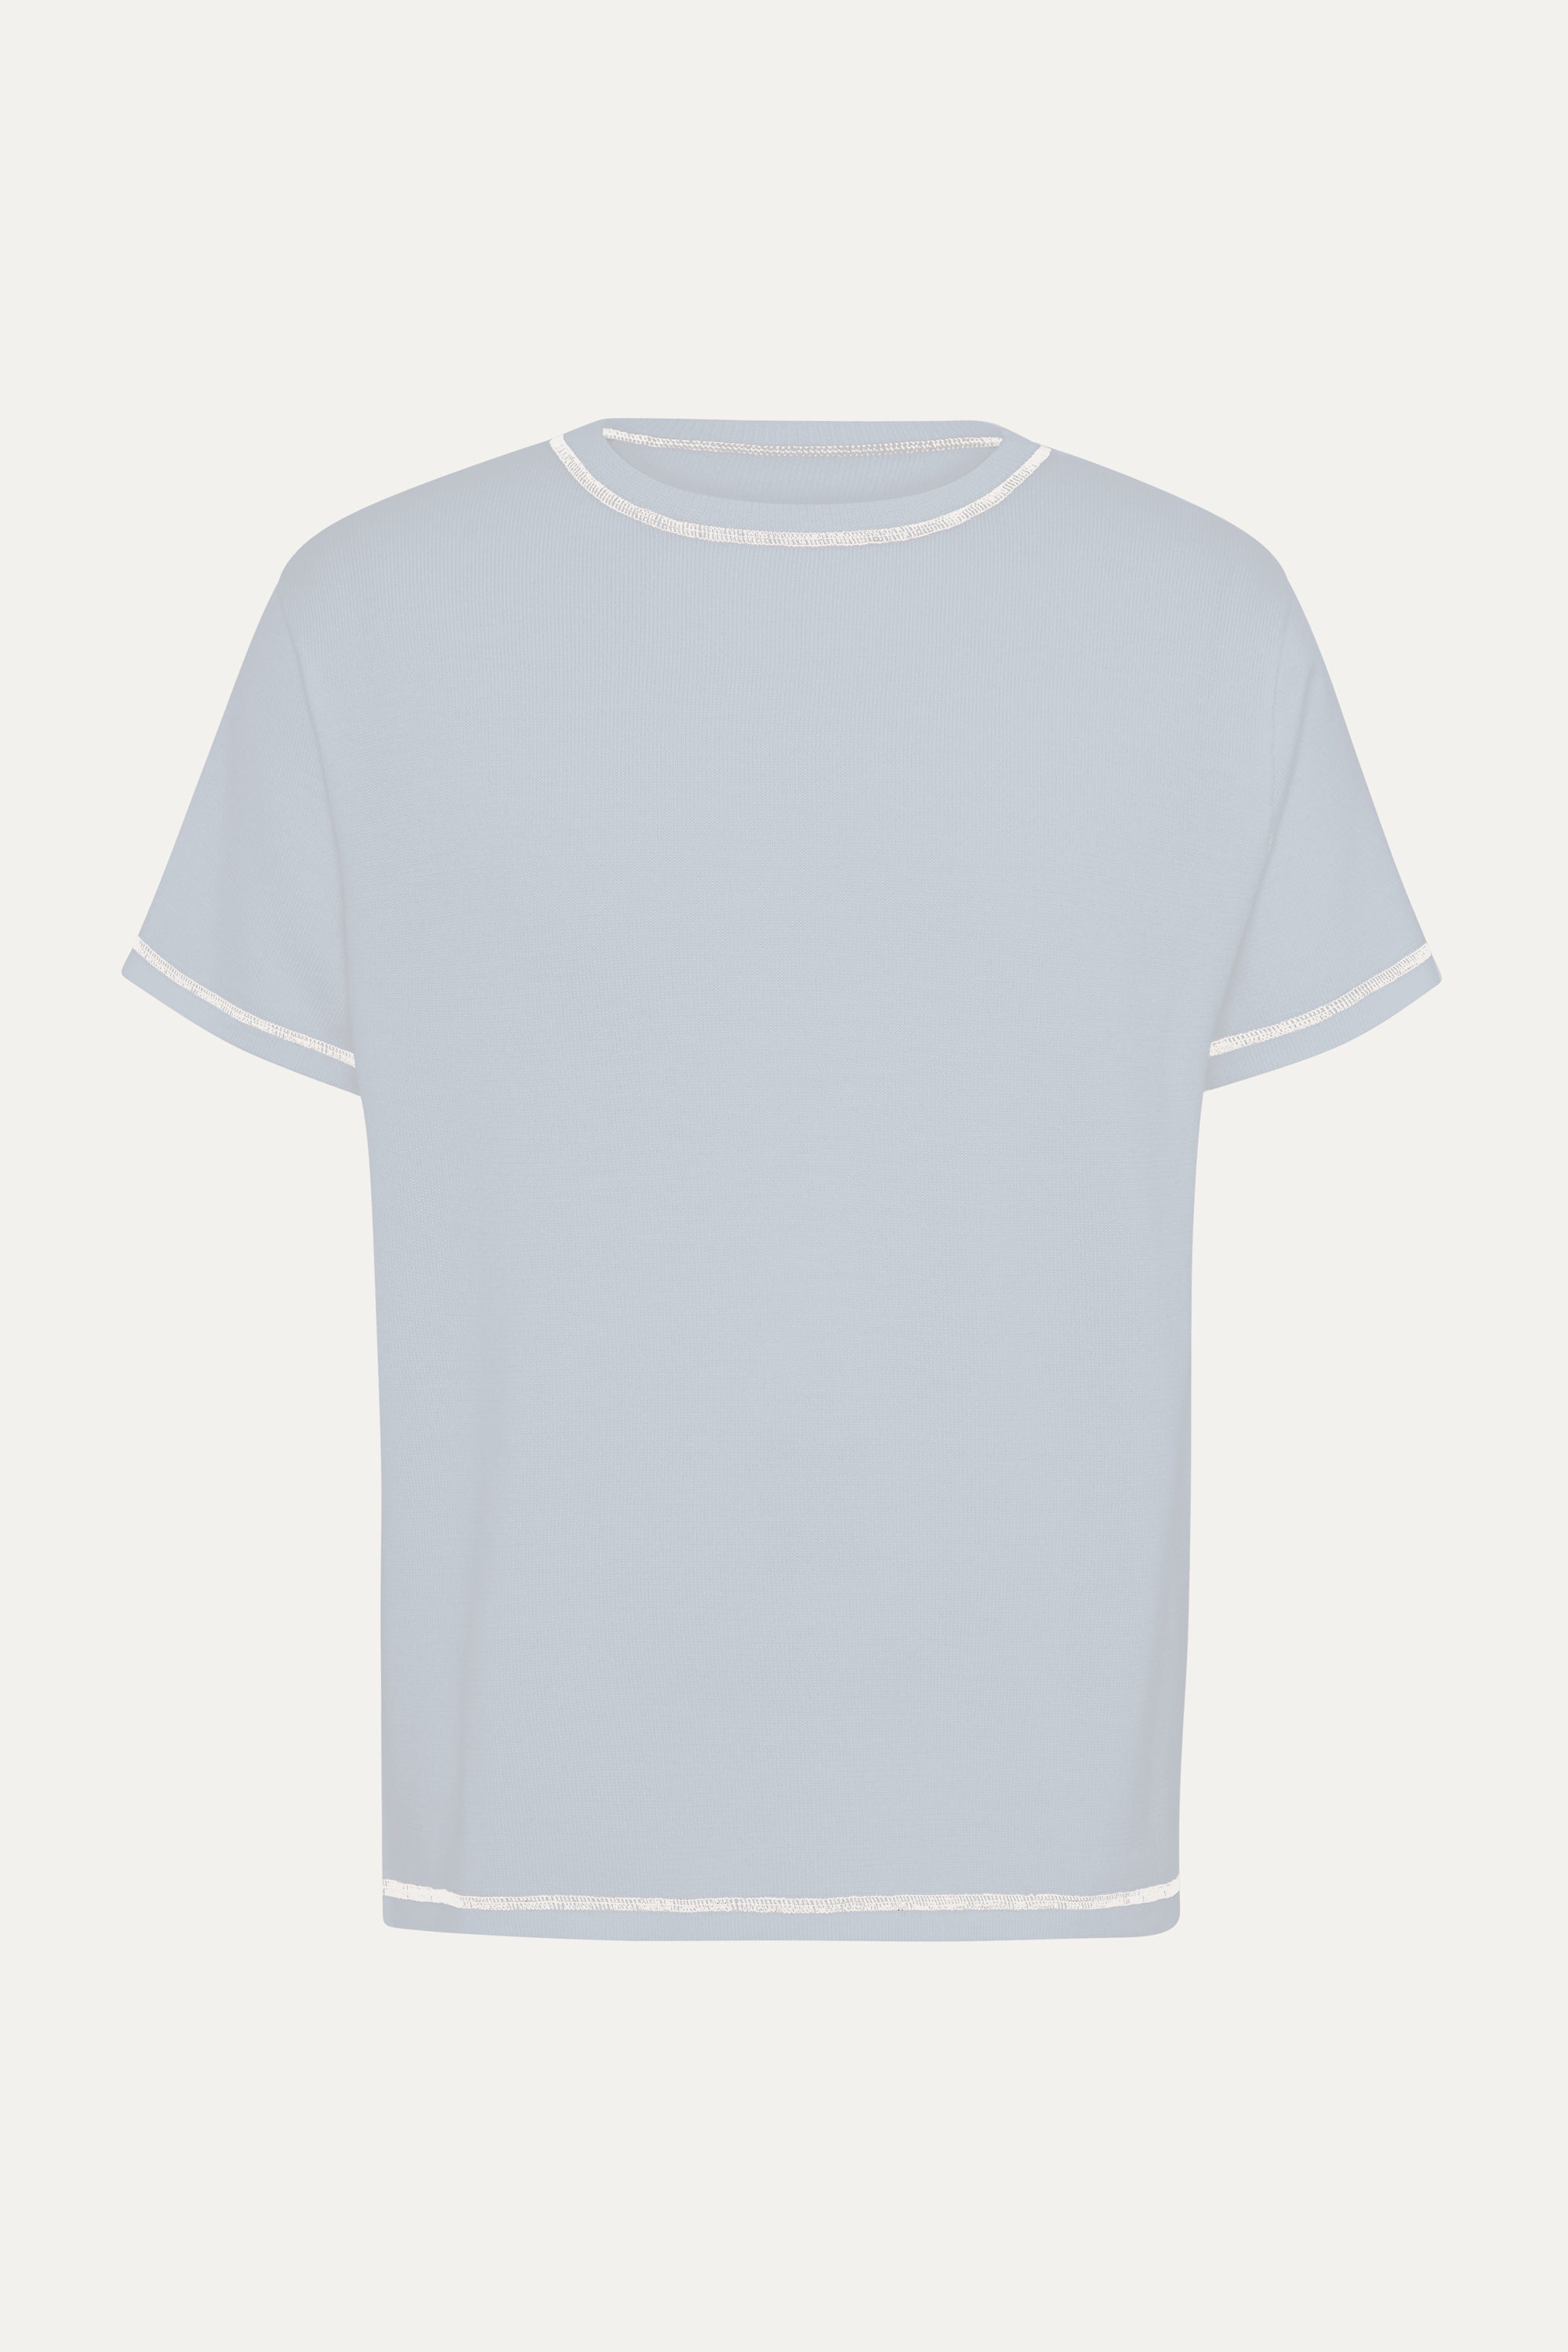 S/S T-Shirt In Powder Blue Merino Wool